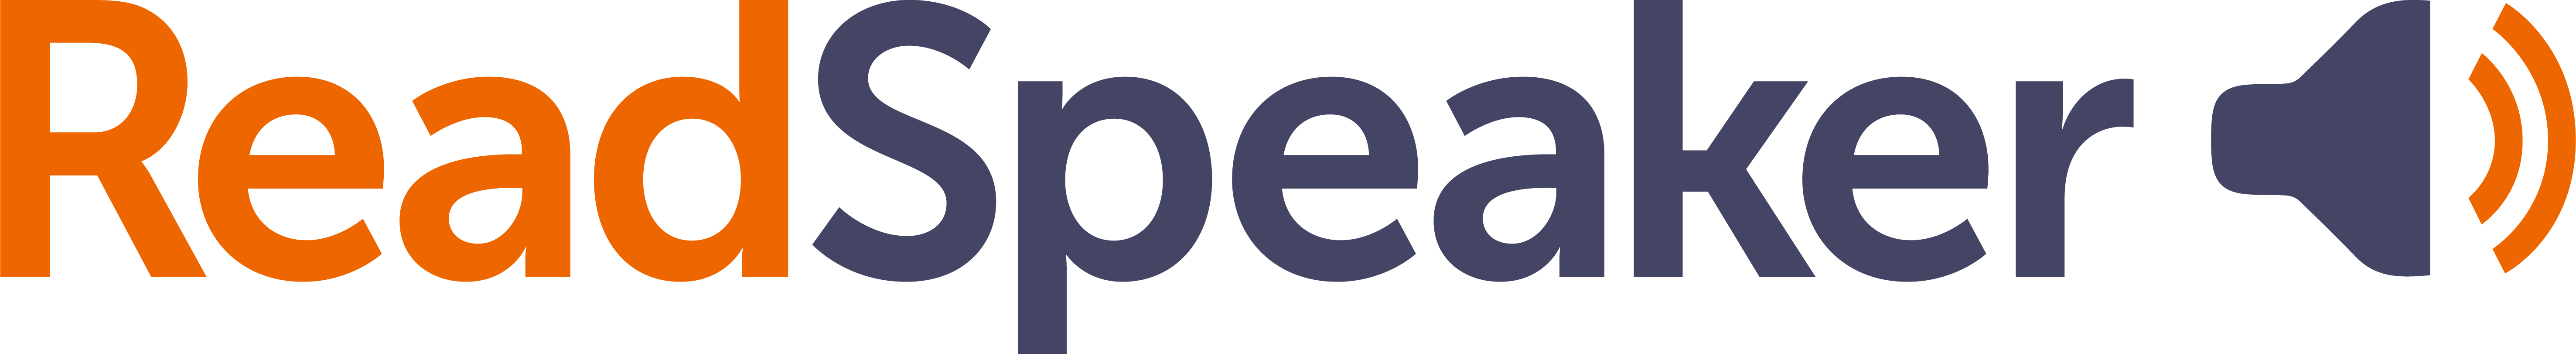 ReadSpeaker's Logo